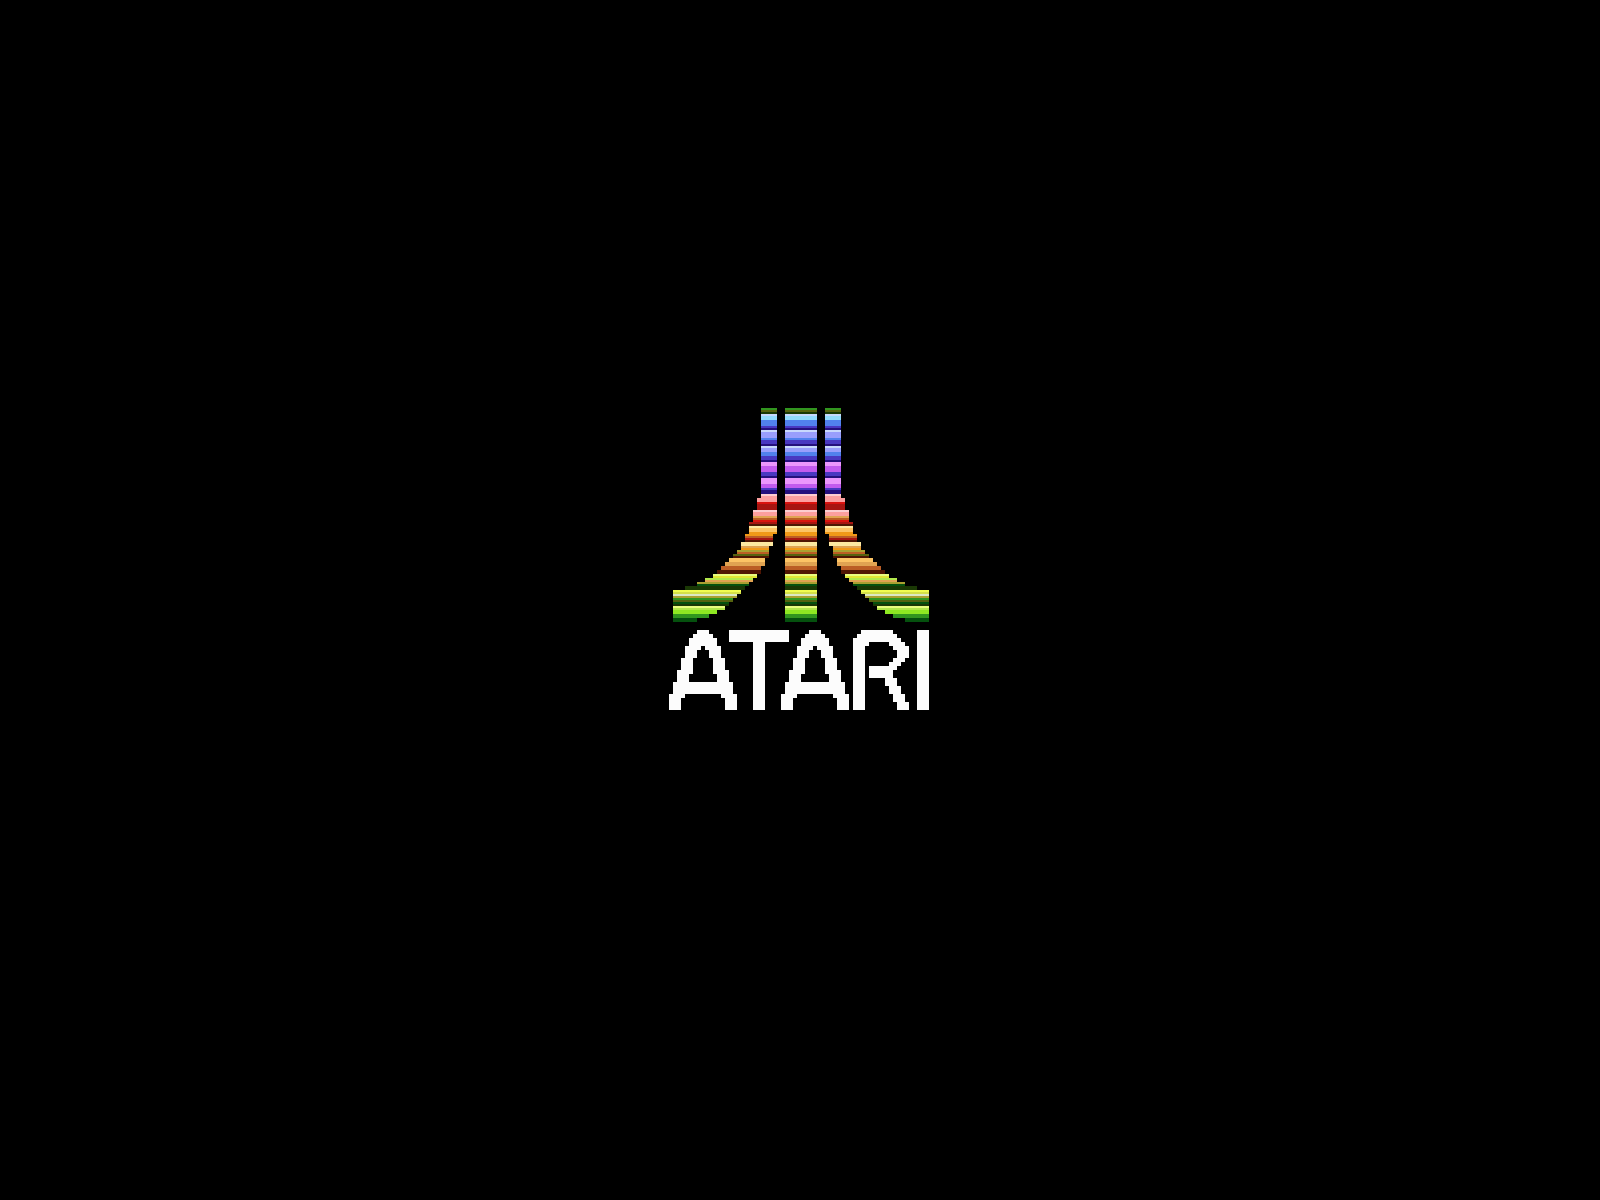 Atari Wallpaper Free Atari Background